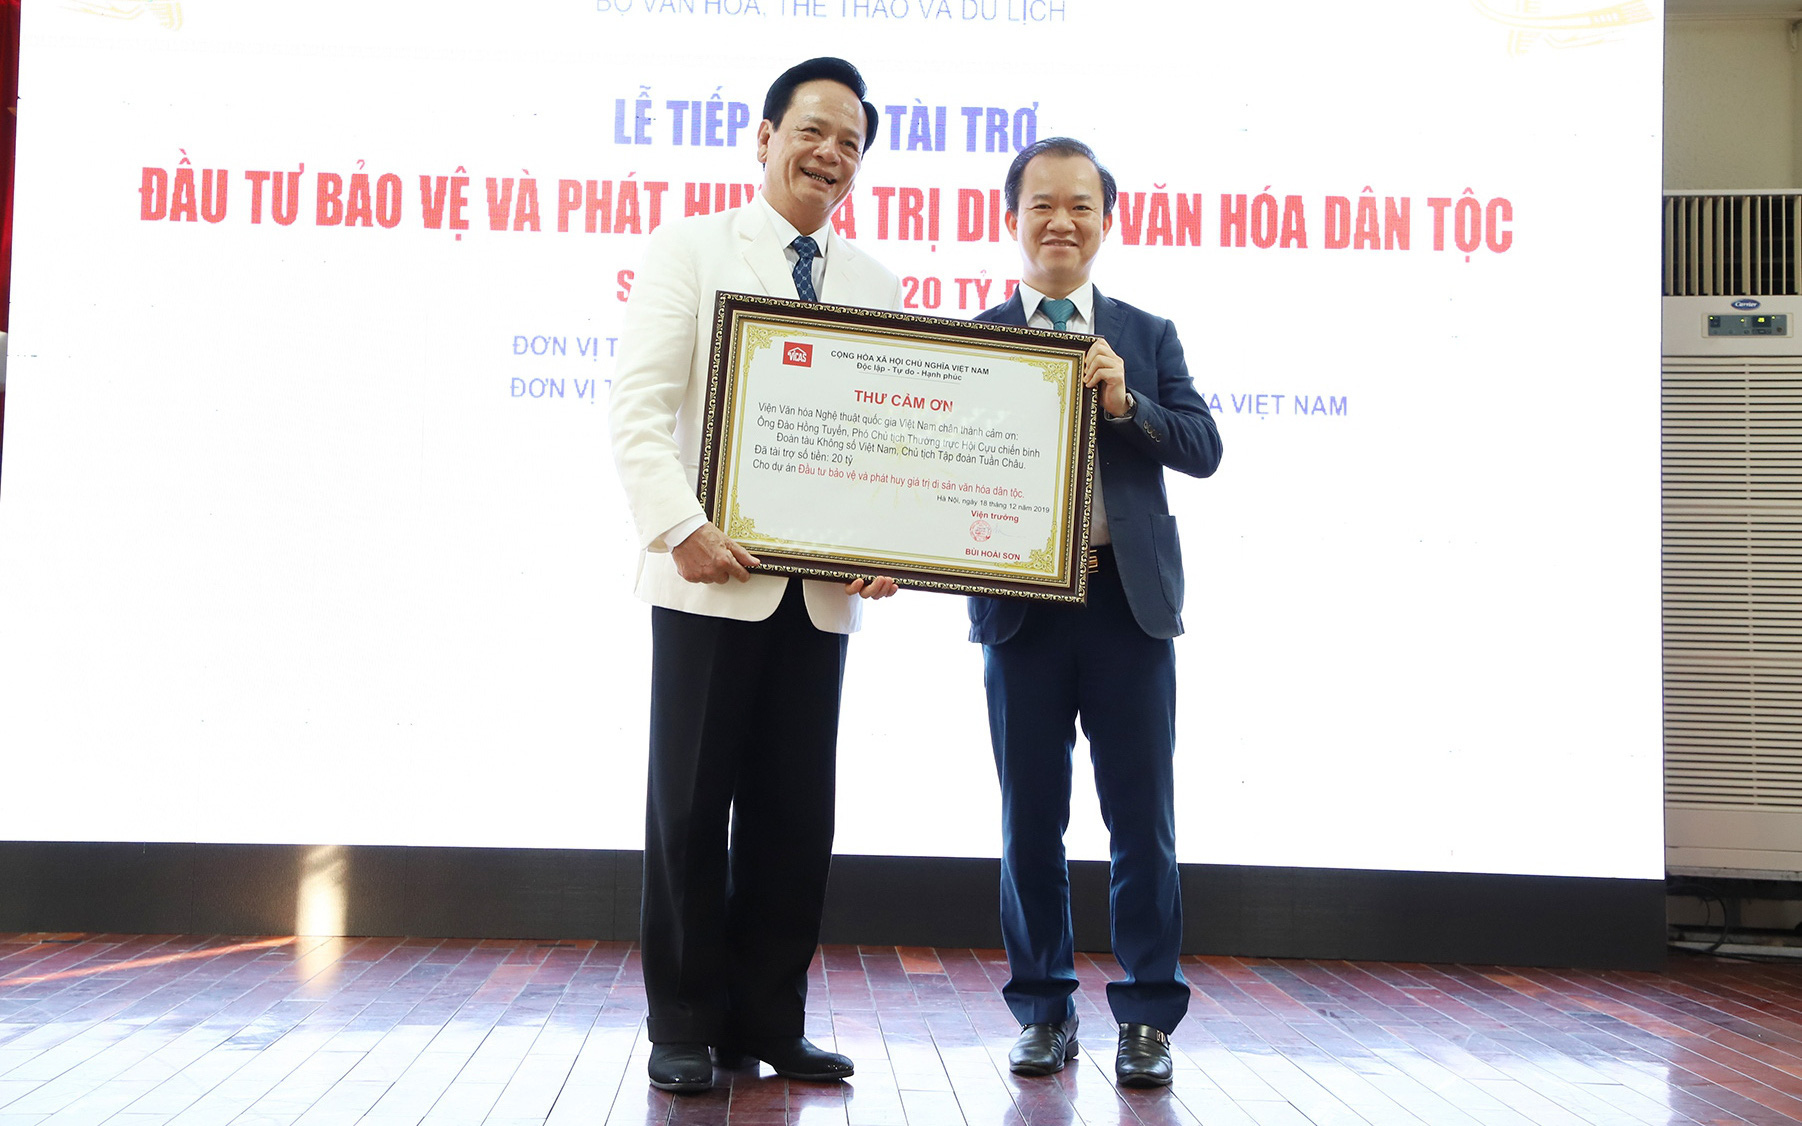 Đào Hồng Tuyển – Người truyền cảm hứng cho các doanh nghiệp đồng hành cùng ngành văn hóa